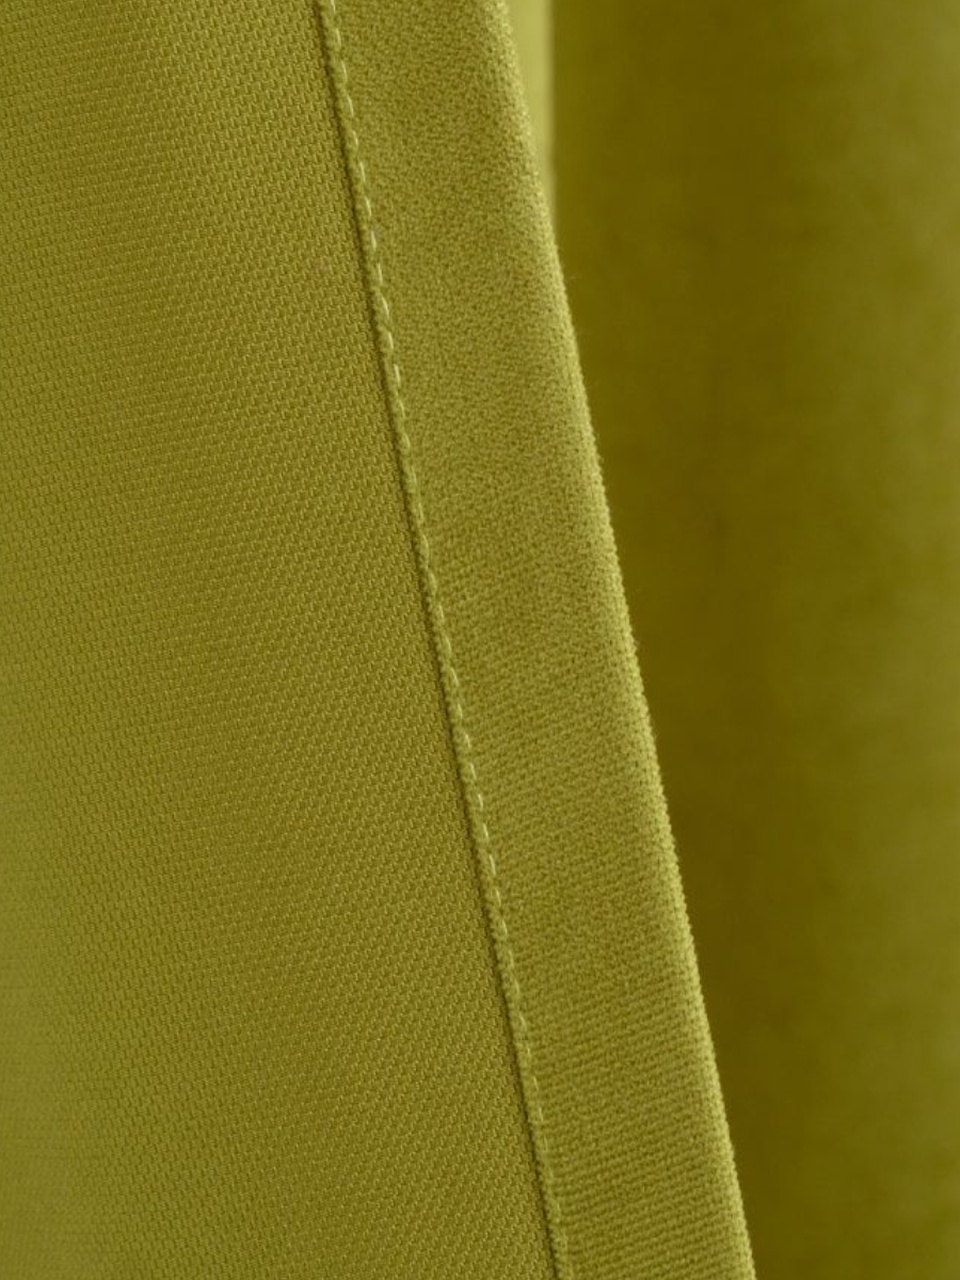 Портьеры Канвас жёлто-зелёный - 600 ₽, заказать онлайн.